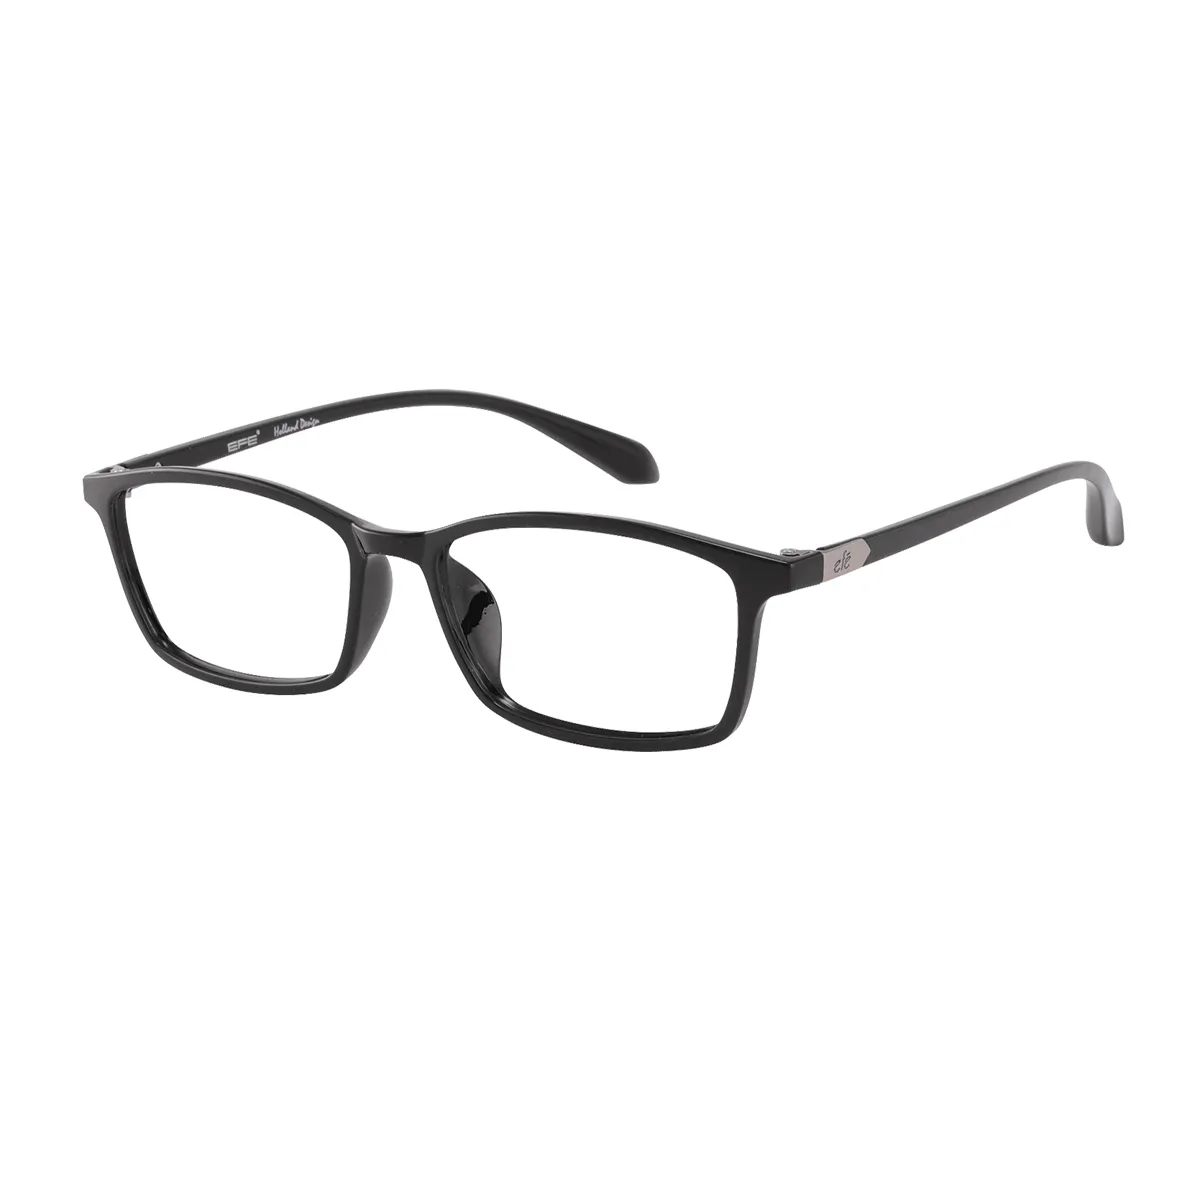 Fair - Rectangle Black Glasses for Men & Women - EFE